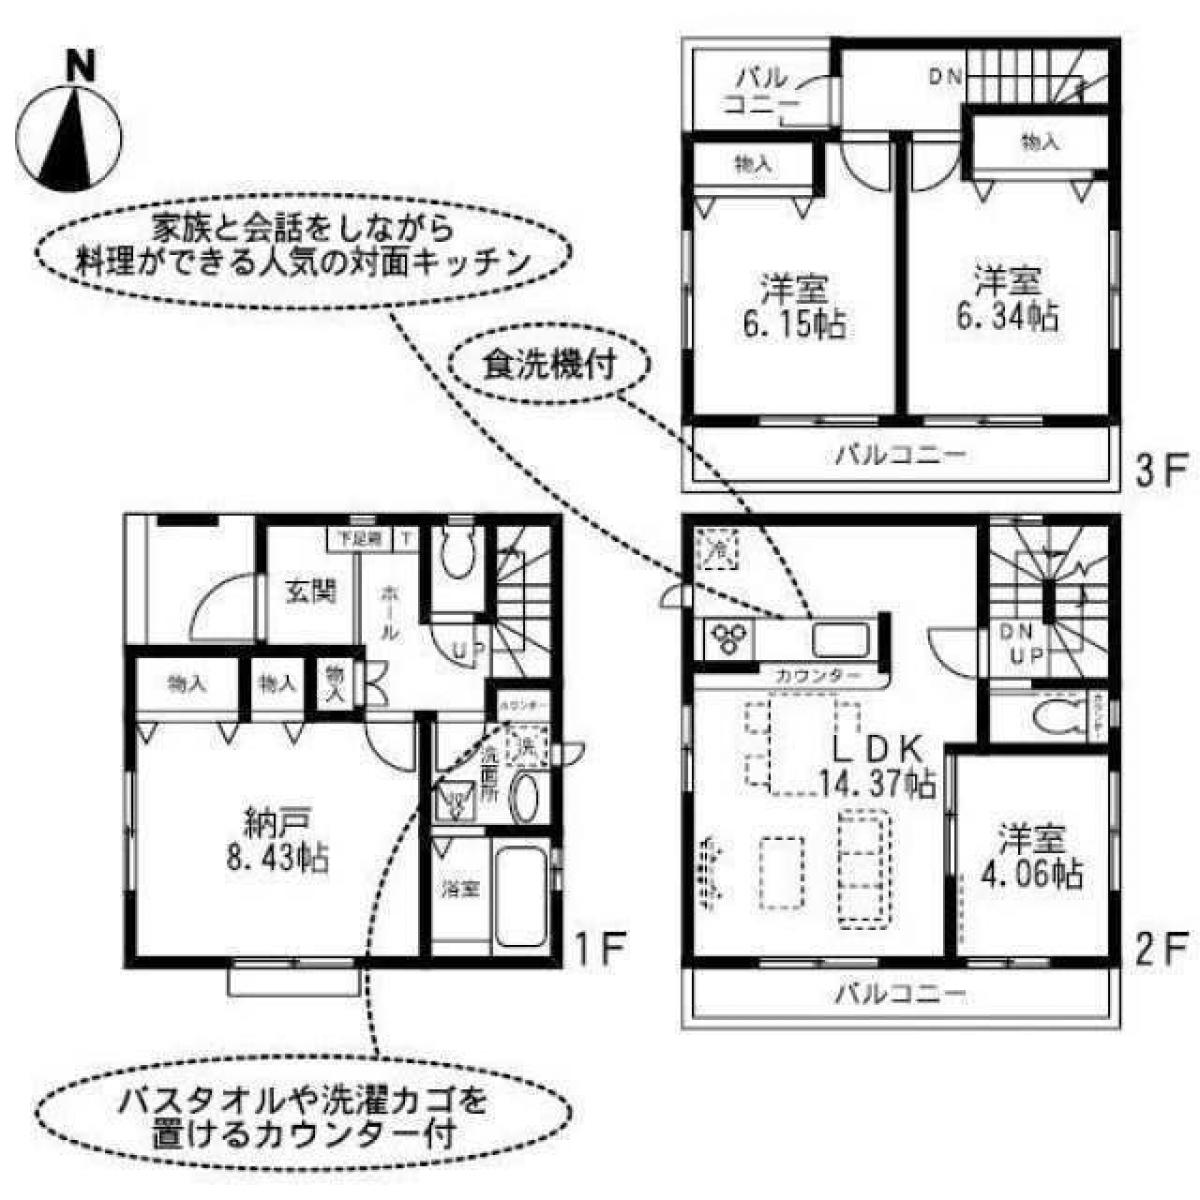 Picture of Home For Sale in Saitama Shi Chuo Ku, Saitama, Japan